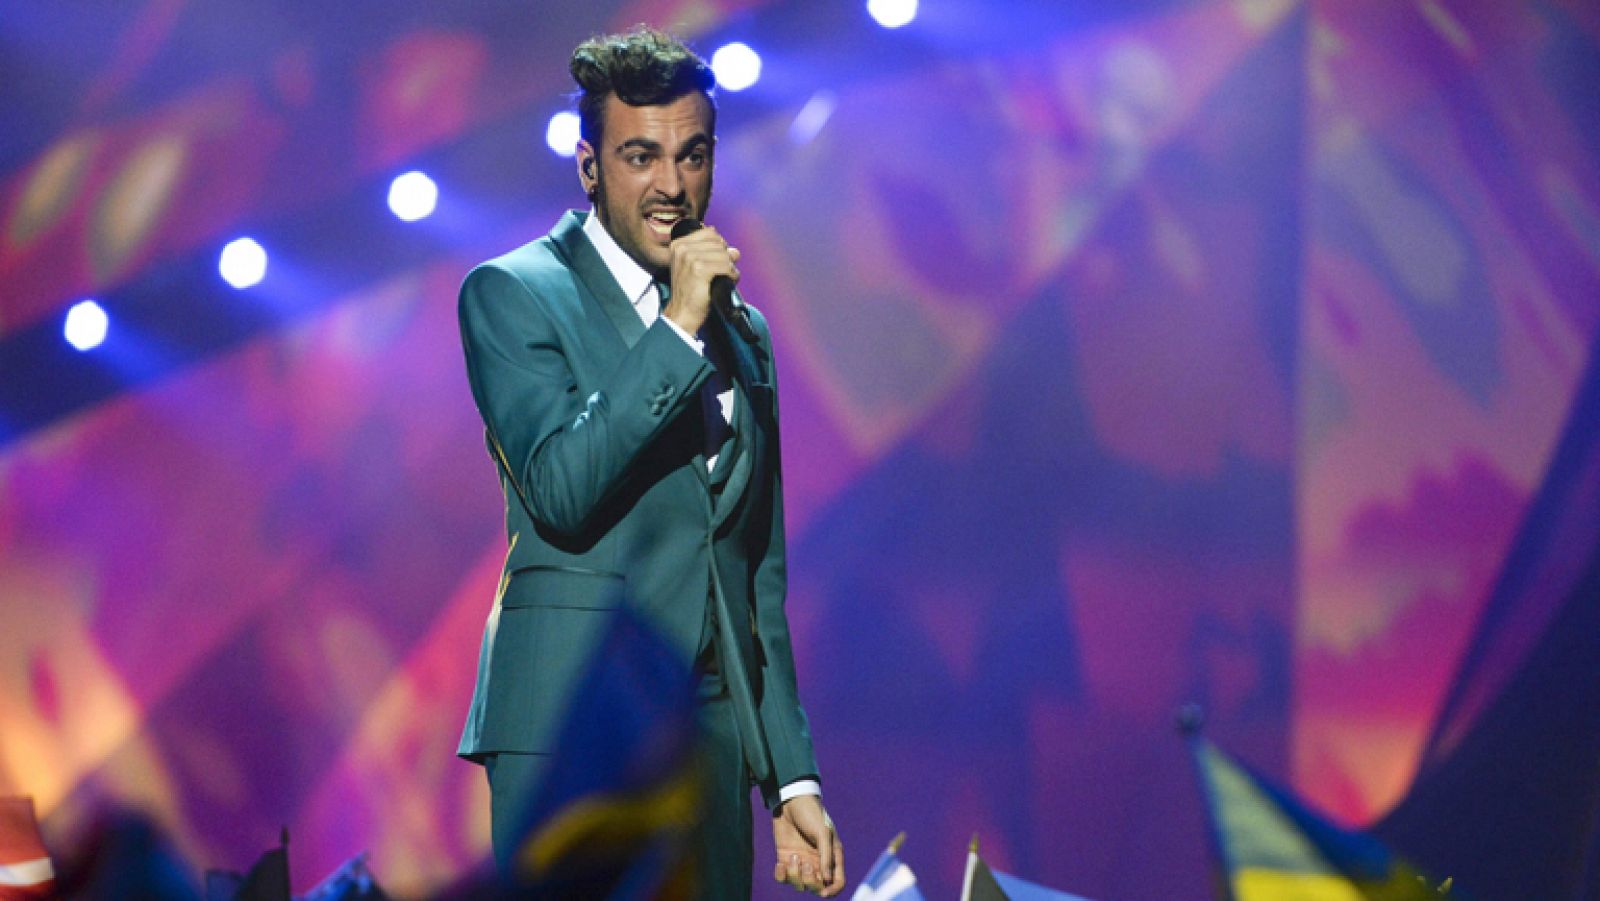  Final de Eurovisión 2013 - Italia